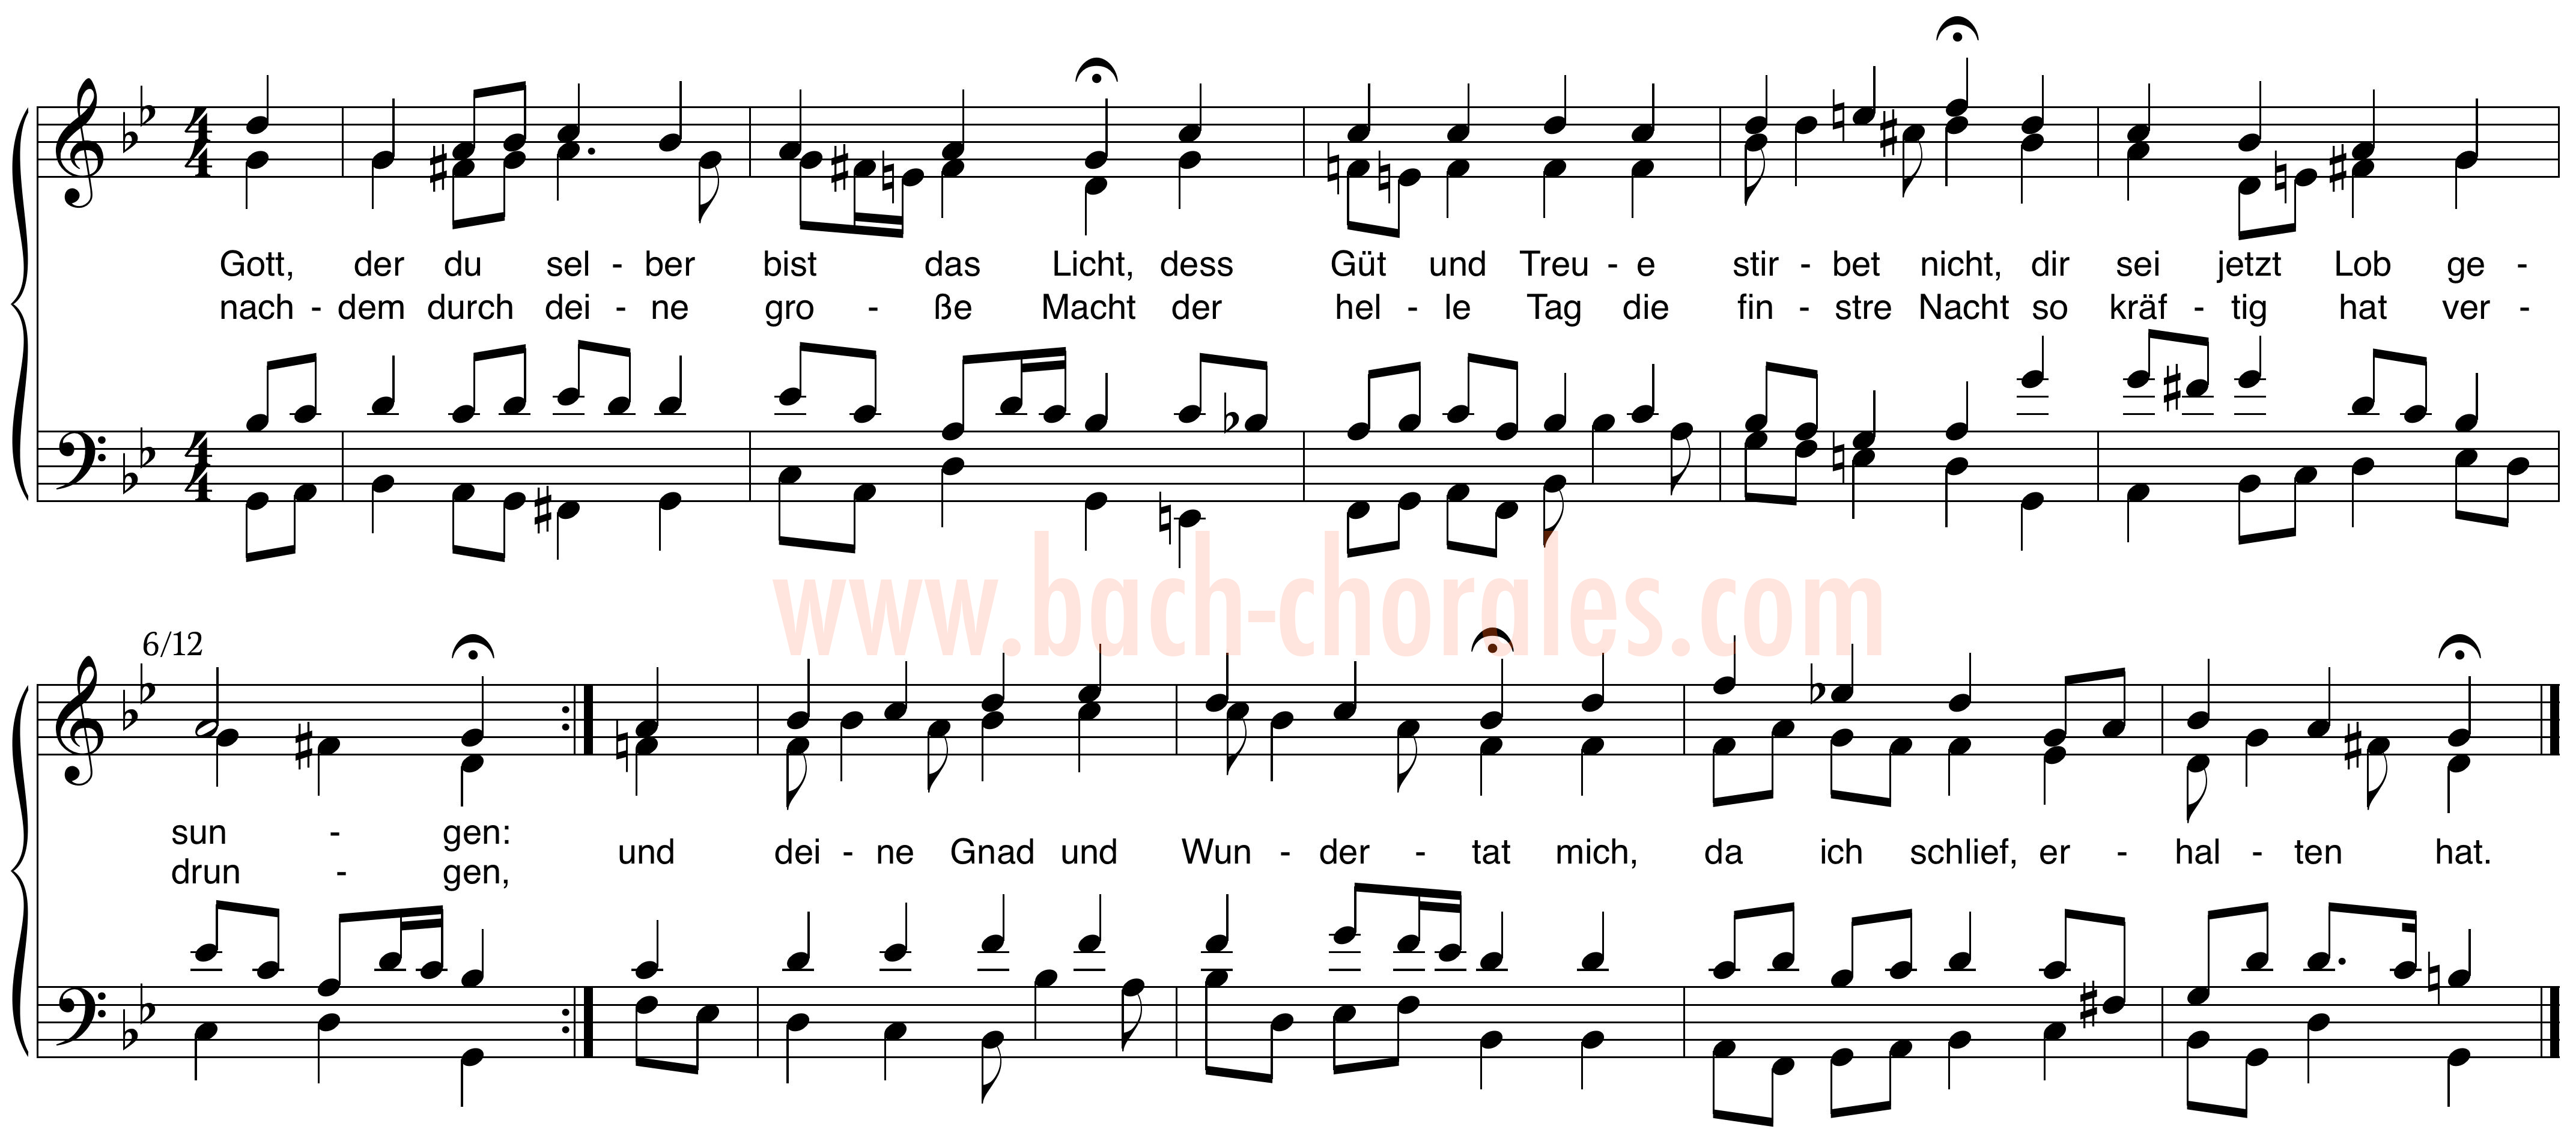 notenbeeld BWV 316 op https://www.bach-chorales.com/